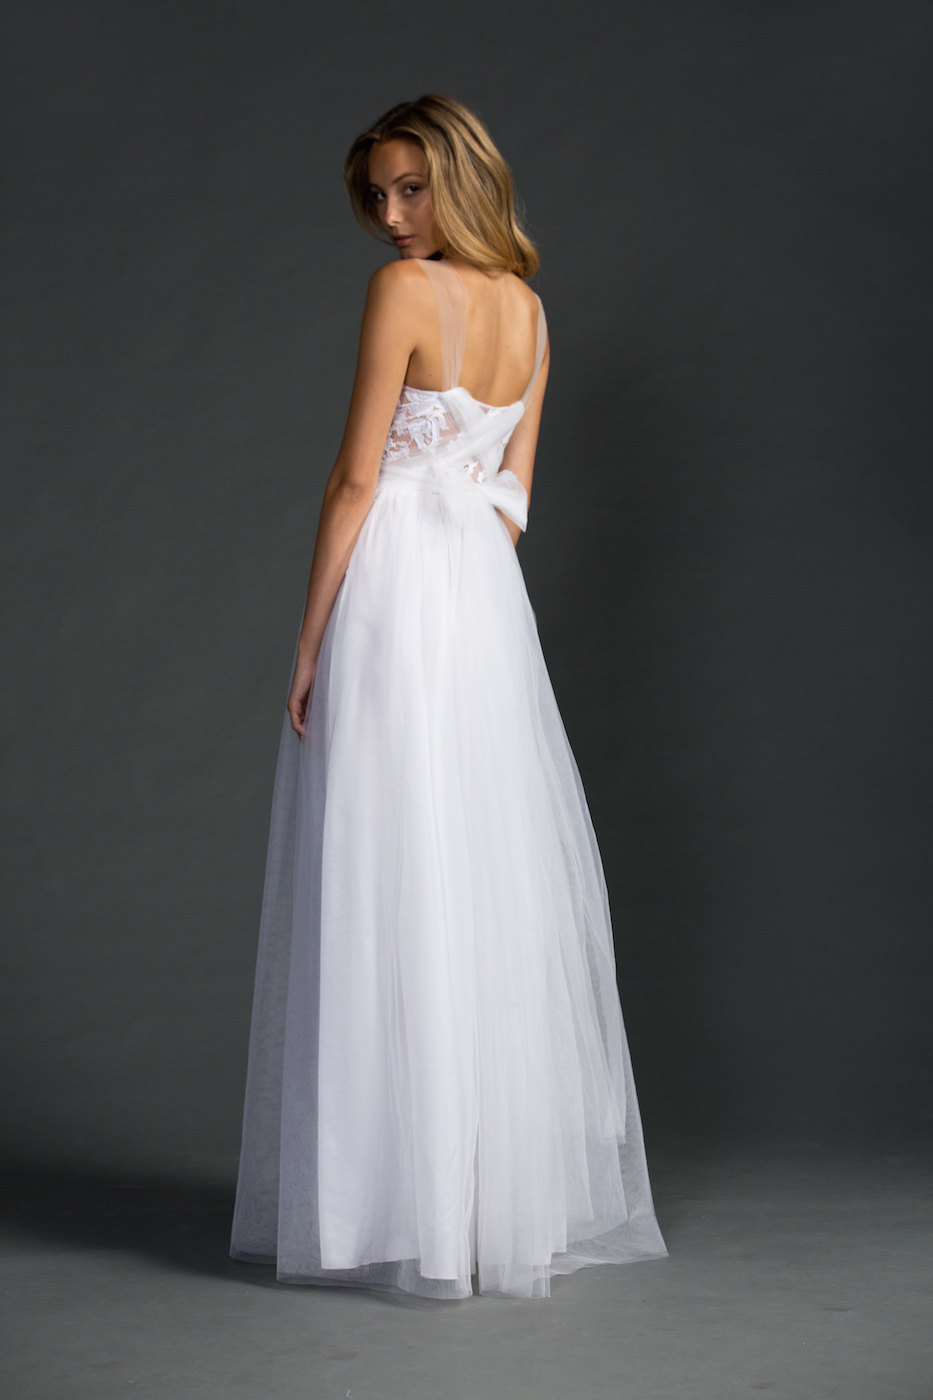 back view - dreamy sheer neckline wedding dress | via https://emmalinebride.com/bride/sheer-neckline-wedding-dress/